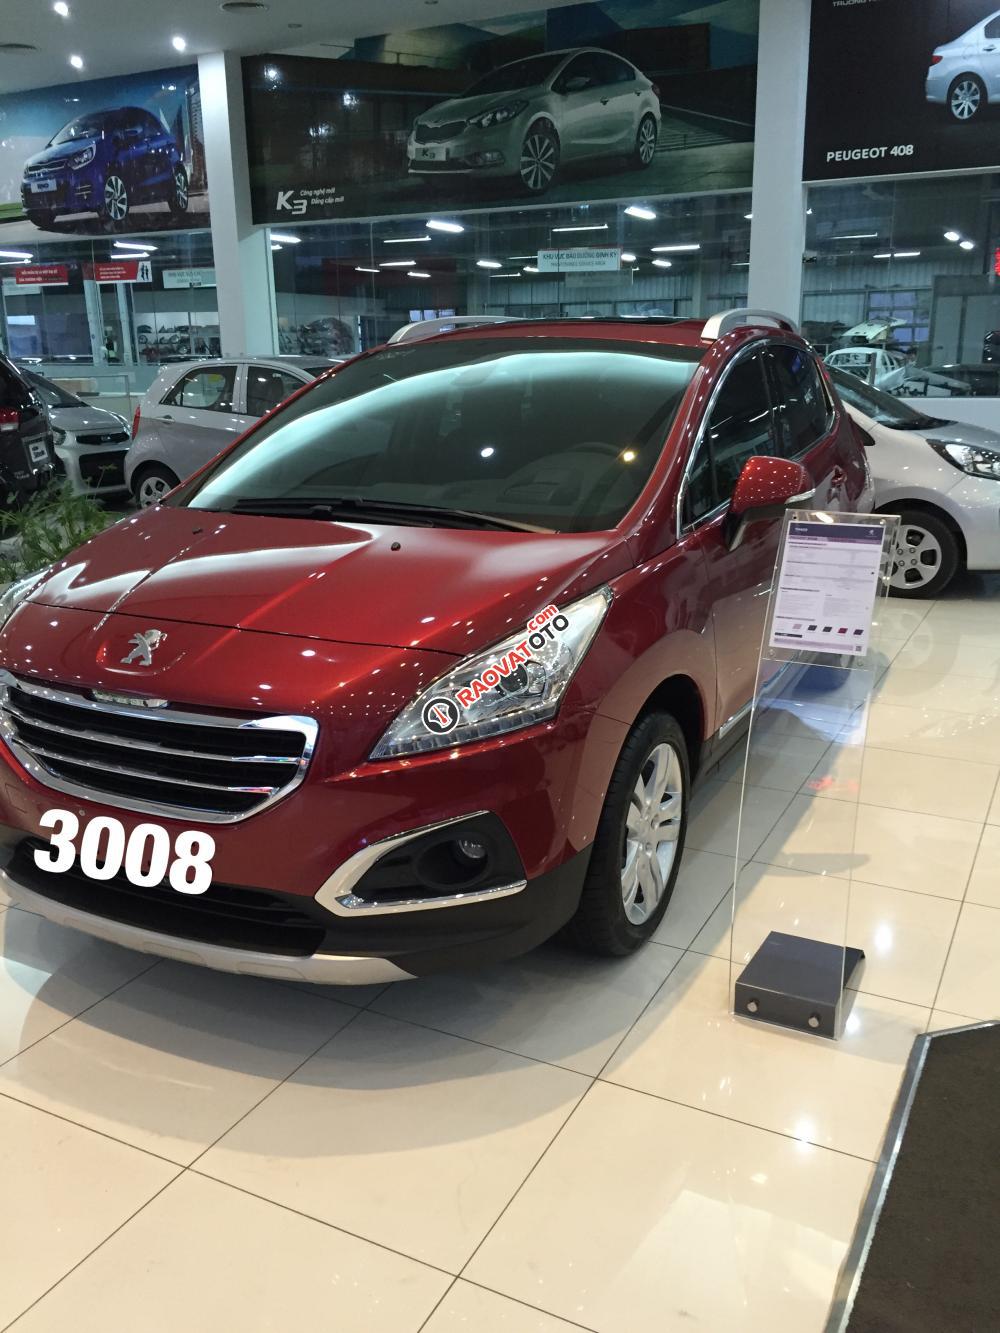 Bán xe Pháp CUV Peugeot 3008 đỏ Form 2016-LH 0969 693 633 -CN Thái Nguyên-0